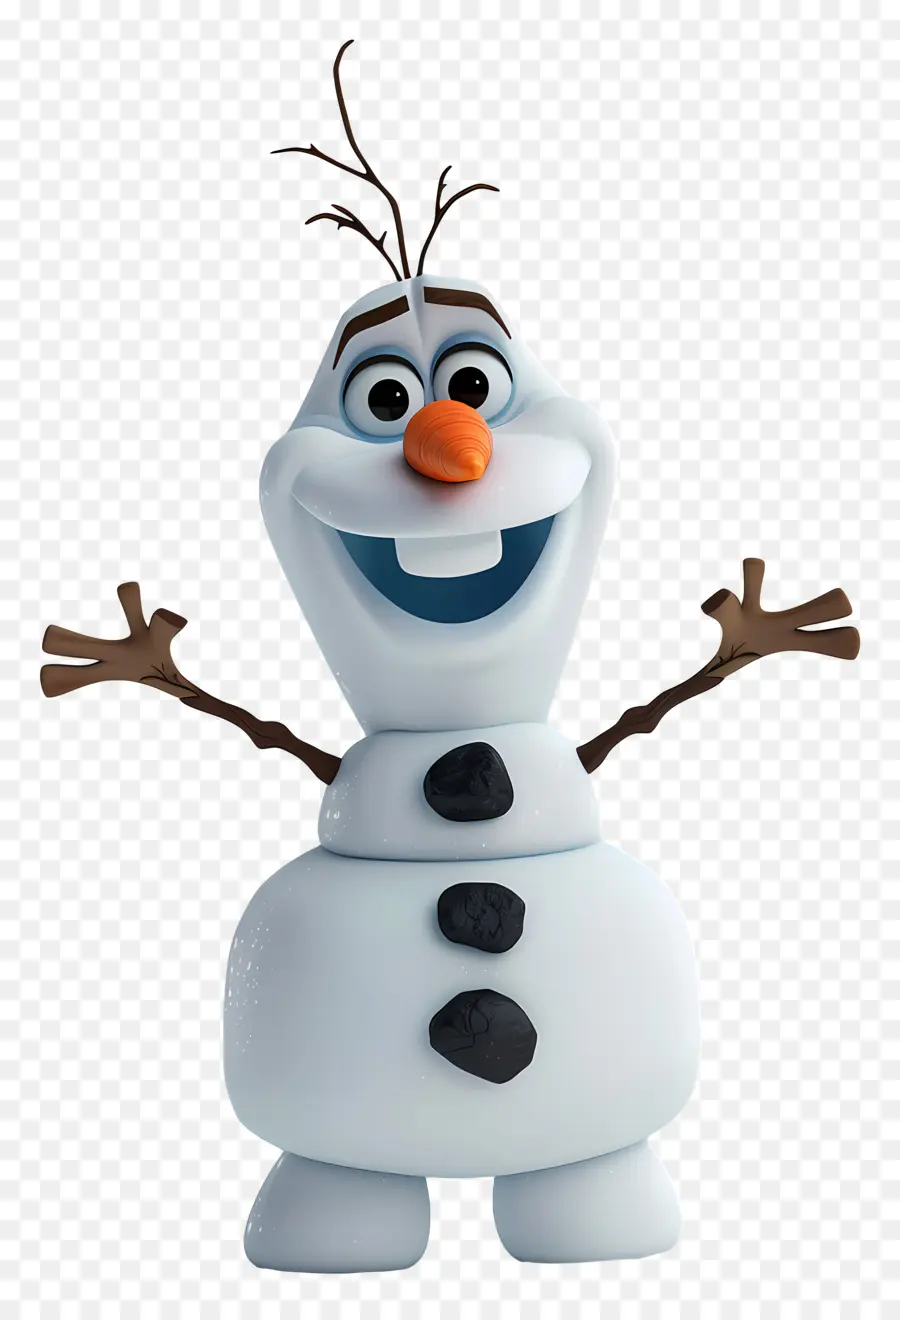 Frozen OLAF - Schneemann -Cartoon -Charakter mit nicht übereinstimmenden Augen